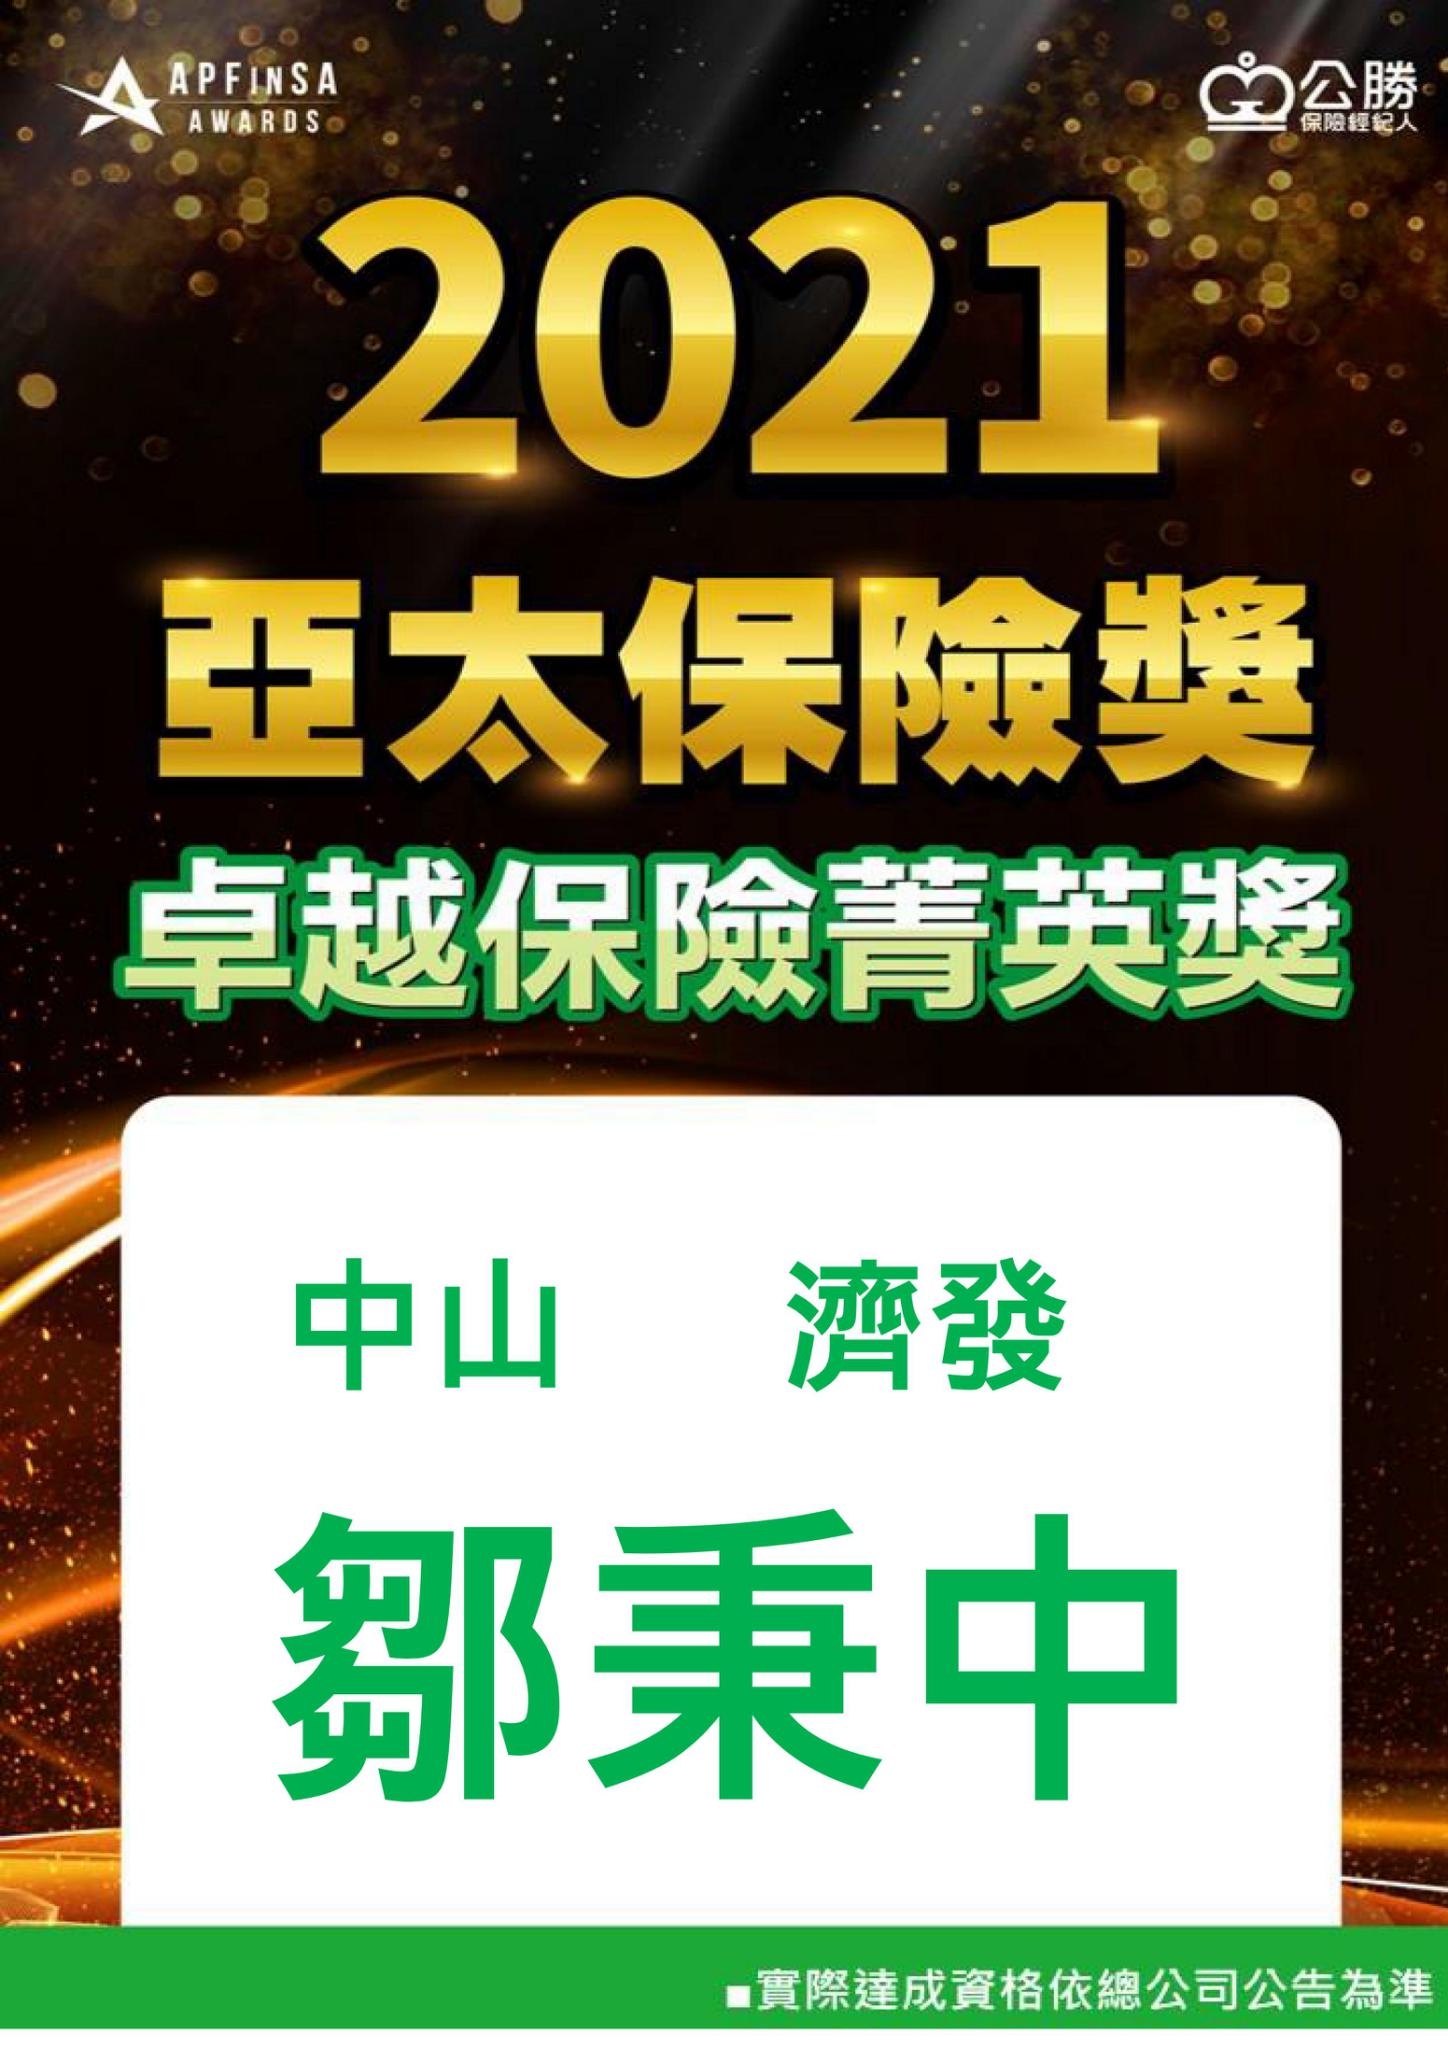 2021 亞太保險獎